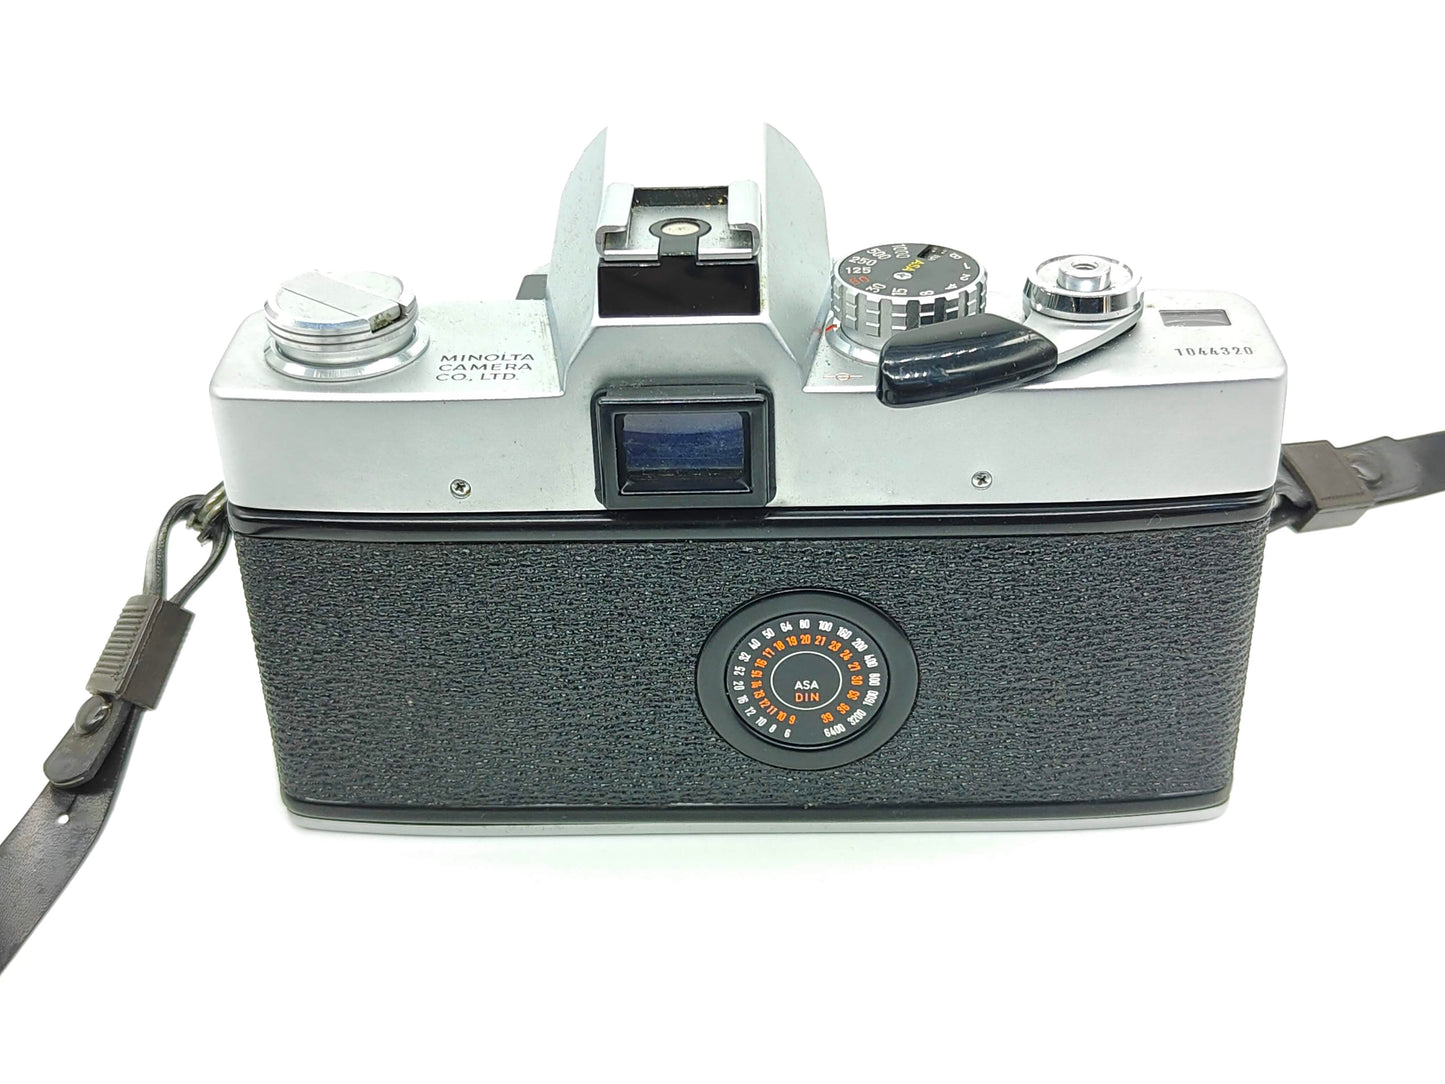 Minolta SRT-Super (SRT-102) film camera.